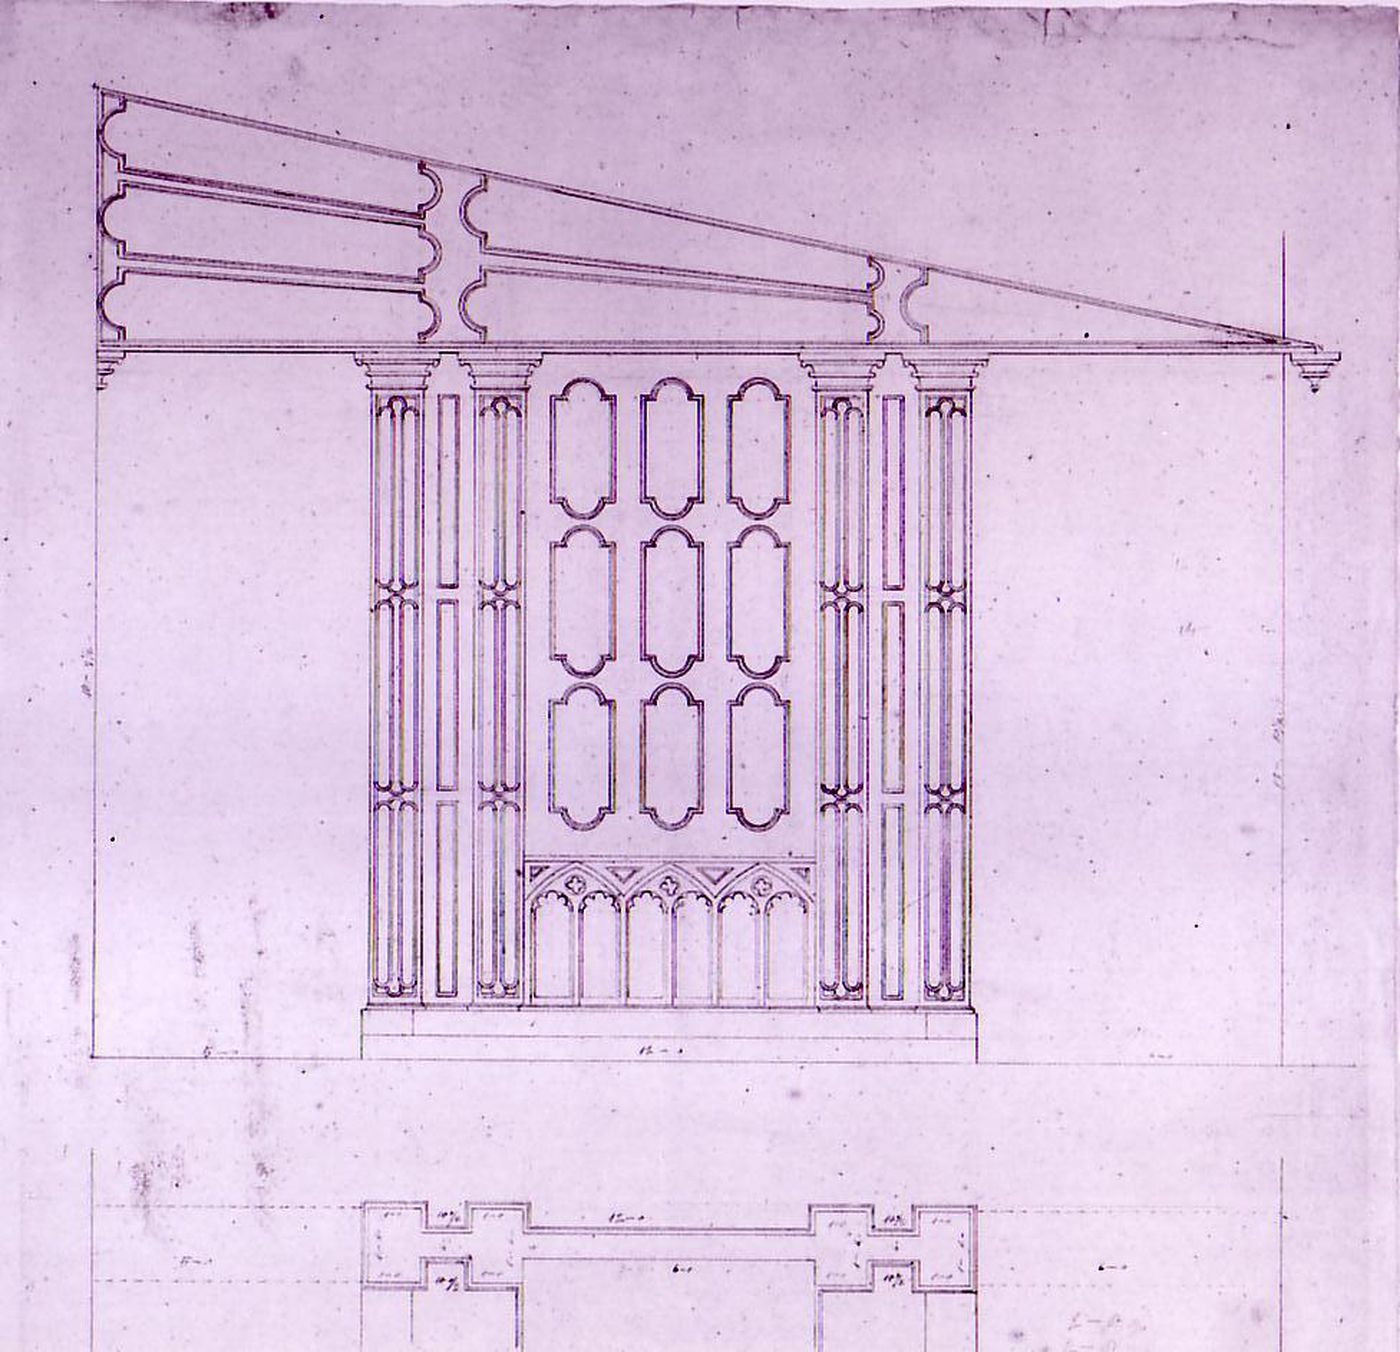 Plan and elevation for a chapel for Notre-Dame de Montréal